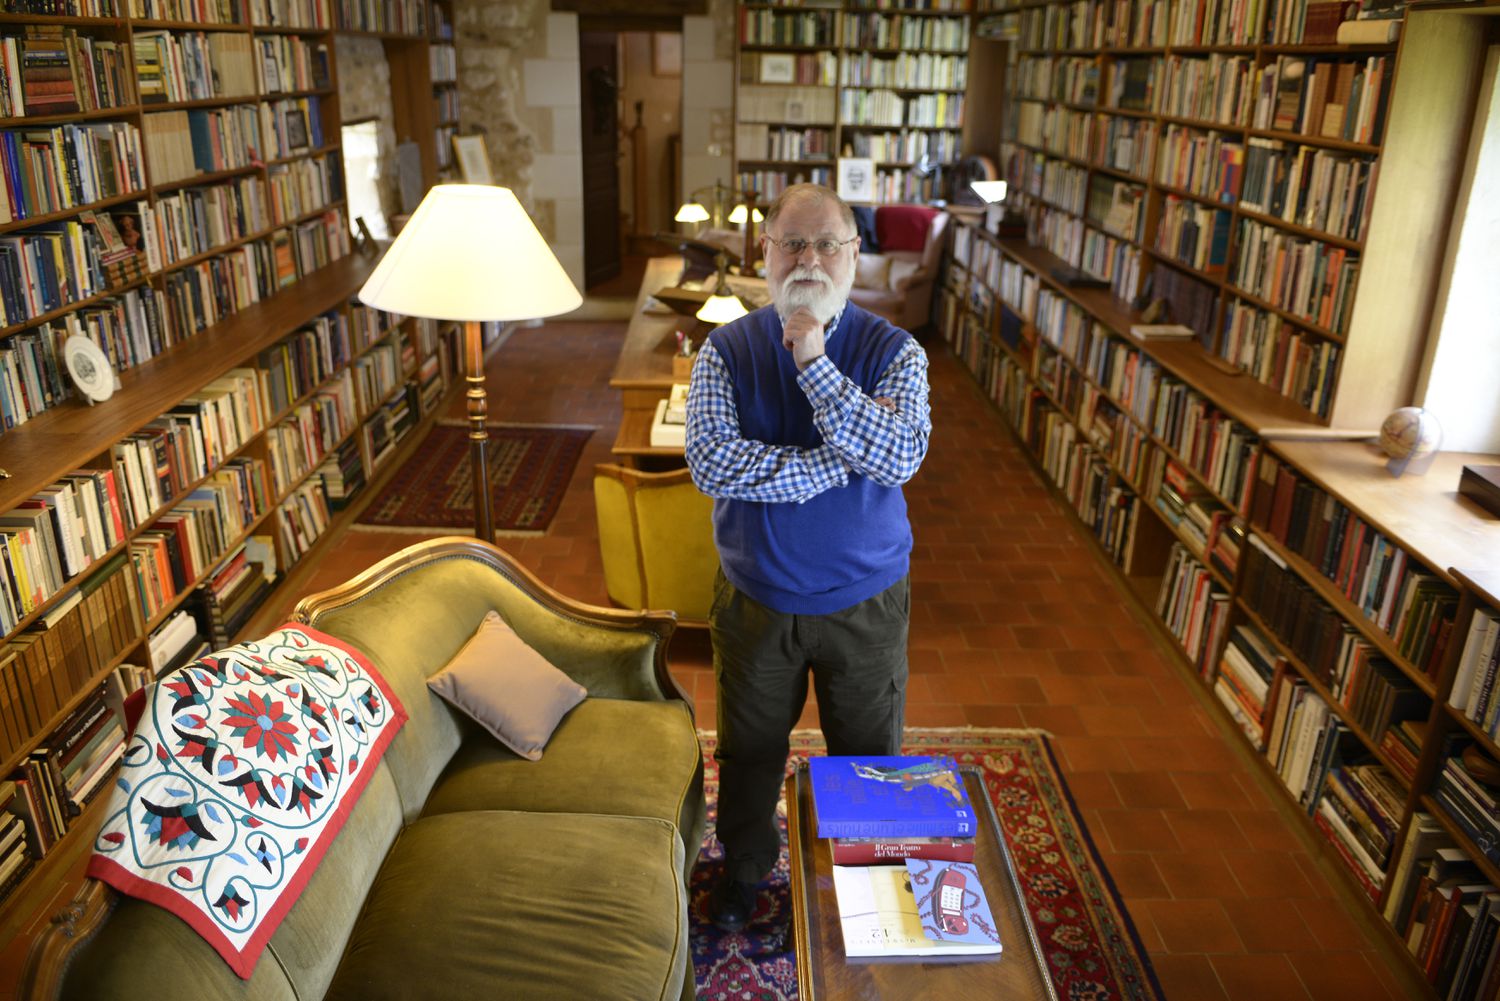 El escritor argentino Alberto Manguel el 29 de abril de 2013 en Mondion, Francia, donde tuvo instalada su biblioteca.